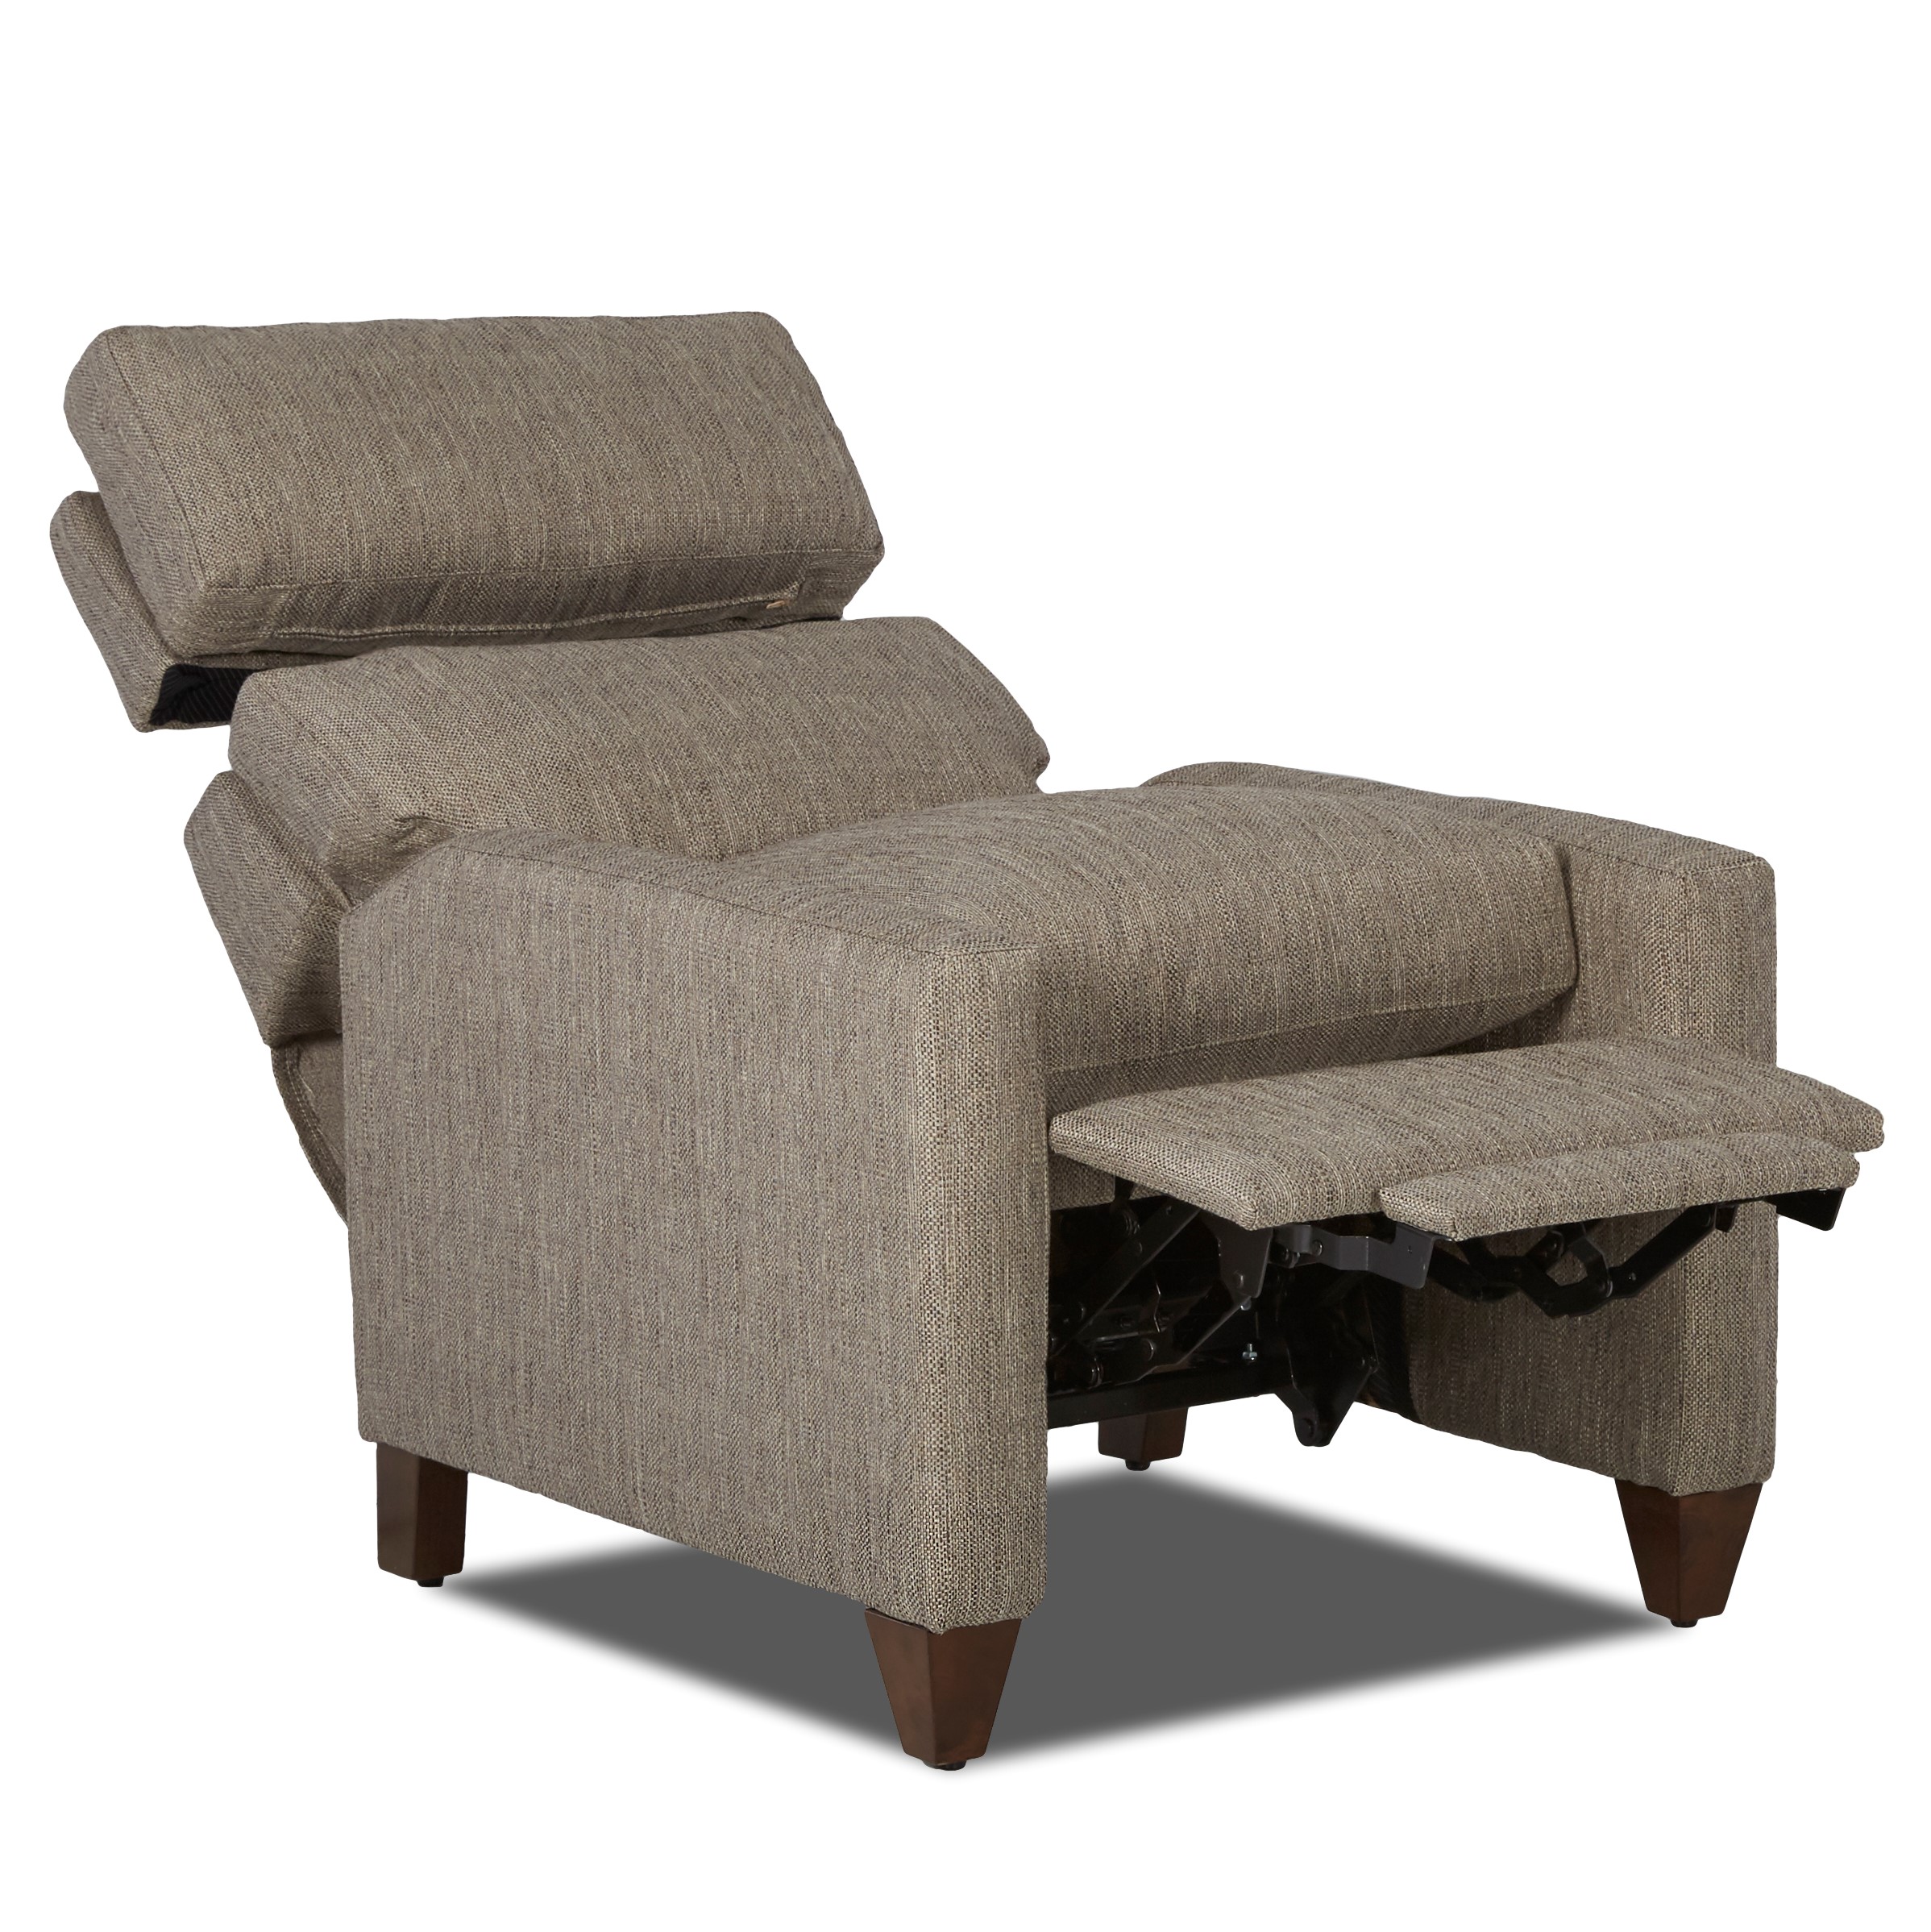 Sofas & Chairs DelTeet Furniture